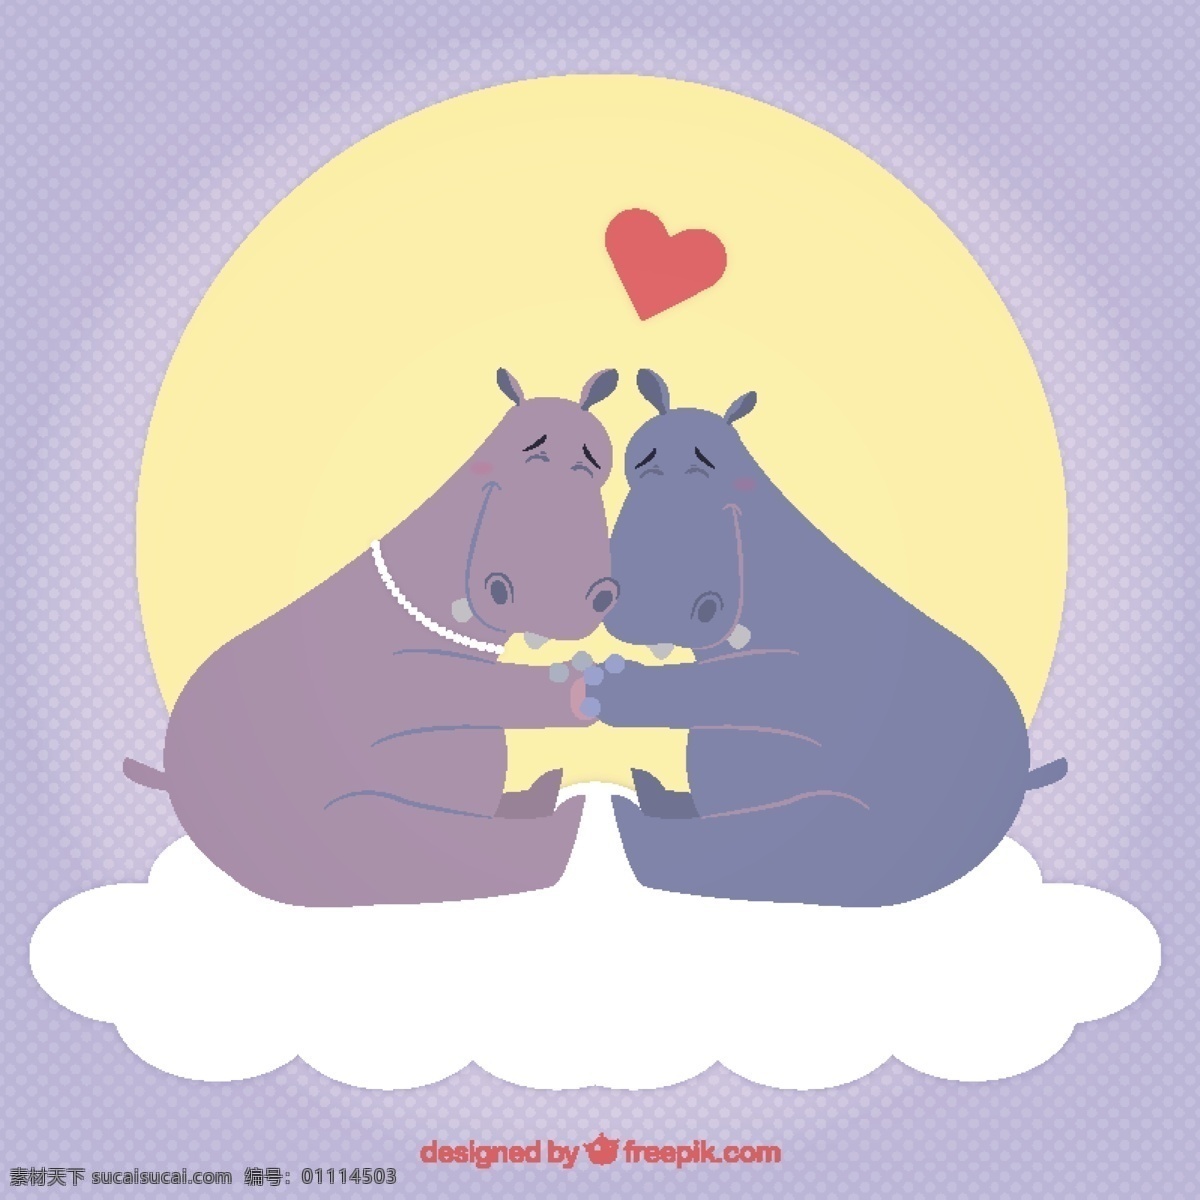 河马 夫妇 说明 心 爱动物 情人节 庆祝 情侣 插画 浪漫 美丽 爱情的夫妻 一天 二月 图文并茂 浪漫主义 白色